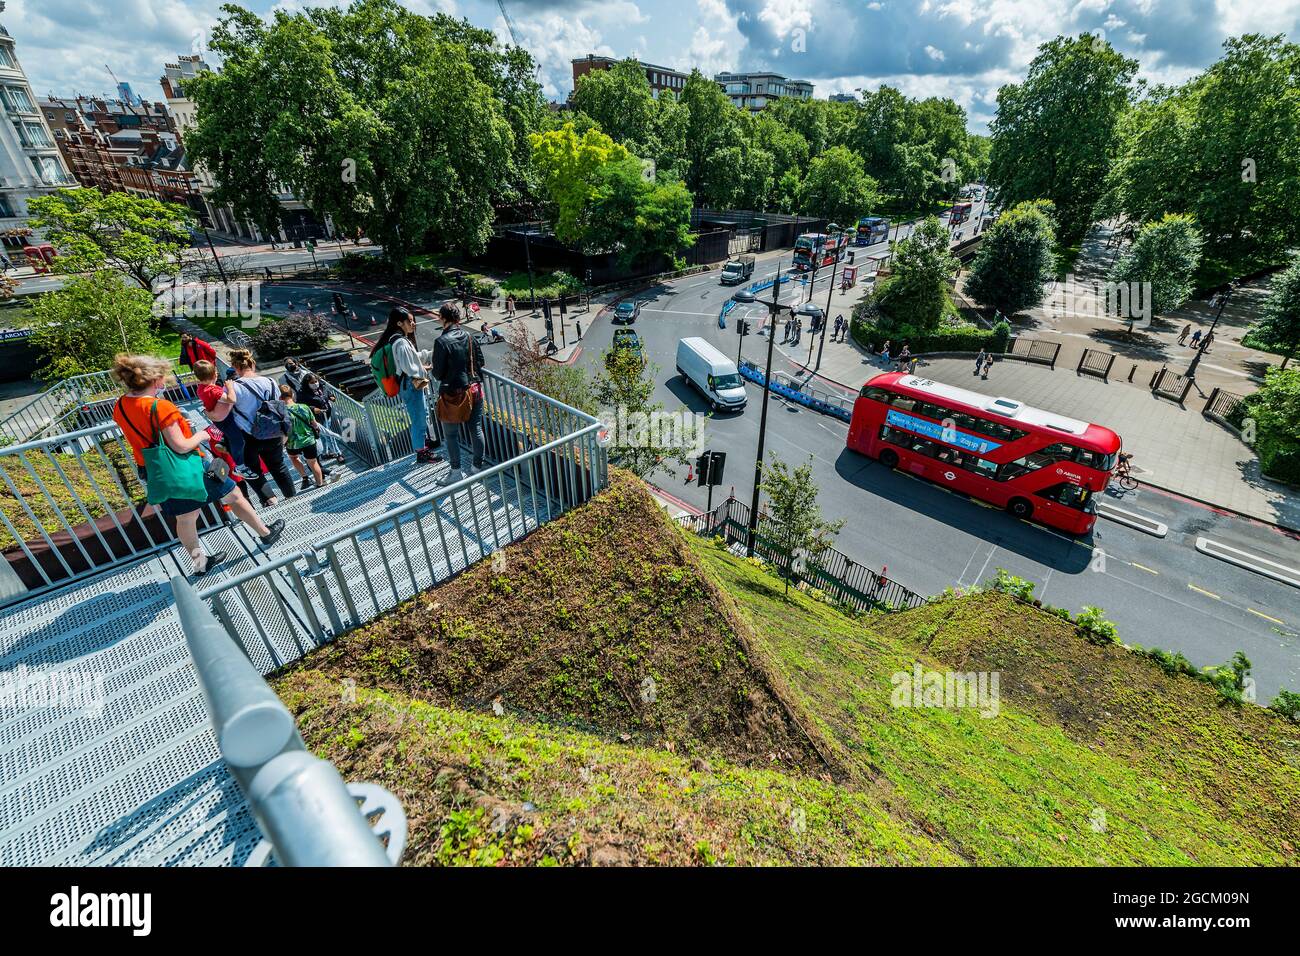 London, Großbritannien. 9 August 2021. Der £2 Million Marble Arch Mound, der im Februar angekündigt wurde, wurde gerade im August nach einem „Fehlstart“ kostenlos wieder eröffnet. Besucher können auf den 25 Meter hohen Gipfel klettern, von dem aus man von einer Aussichtsplattform aus einen 360-Grad-Blick auf die Oxford Street und den Hyde Park hat und von der breiten Öffentlichkeit nie zuvor gesehene Ausblicke genießen kann. Auf dem Weg nach unten steigen die Besucher in einen ausgehöhlten Raum, der für Ausstellungen genutzt wird. Es ist bis zum 2022. Januar für Besucher geöffnet.“ Entworfen von der niederländischen Firma MVRDV hatte es ursprünglich eine £6.50 Eintrittsgebühr. Der benachbarte Hyde Park ist fast völlig unnachbar Stockfoto